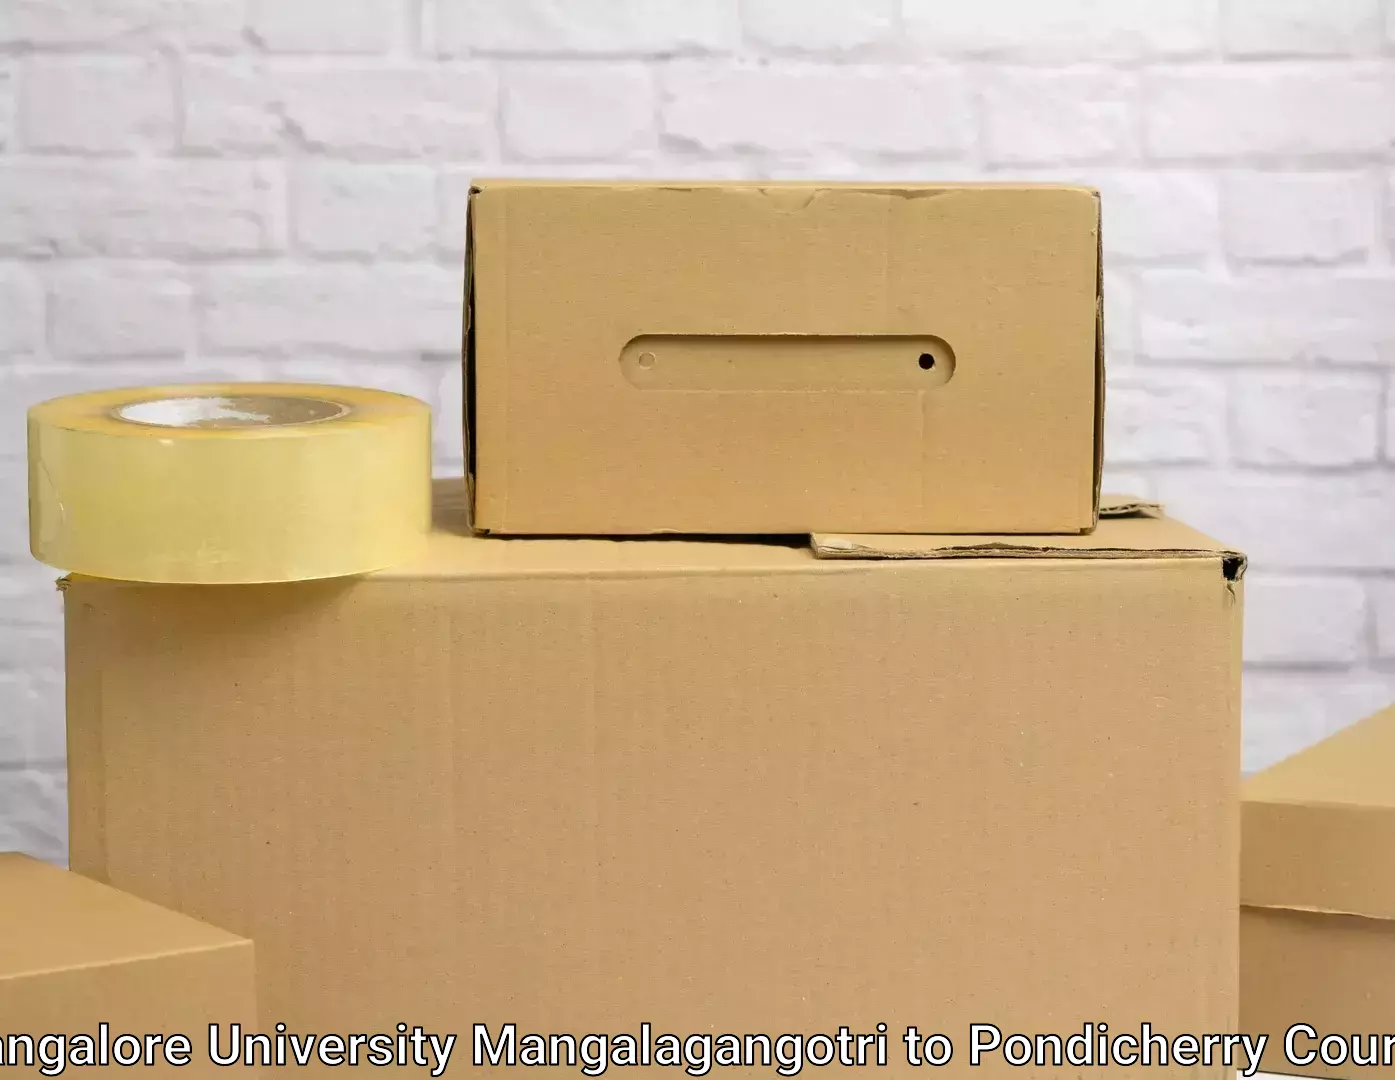 Household moving companies Mangalore University Mangalagangotri to Pondicherry